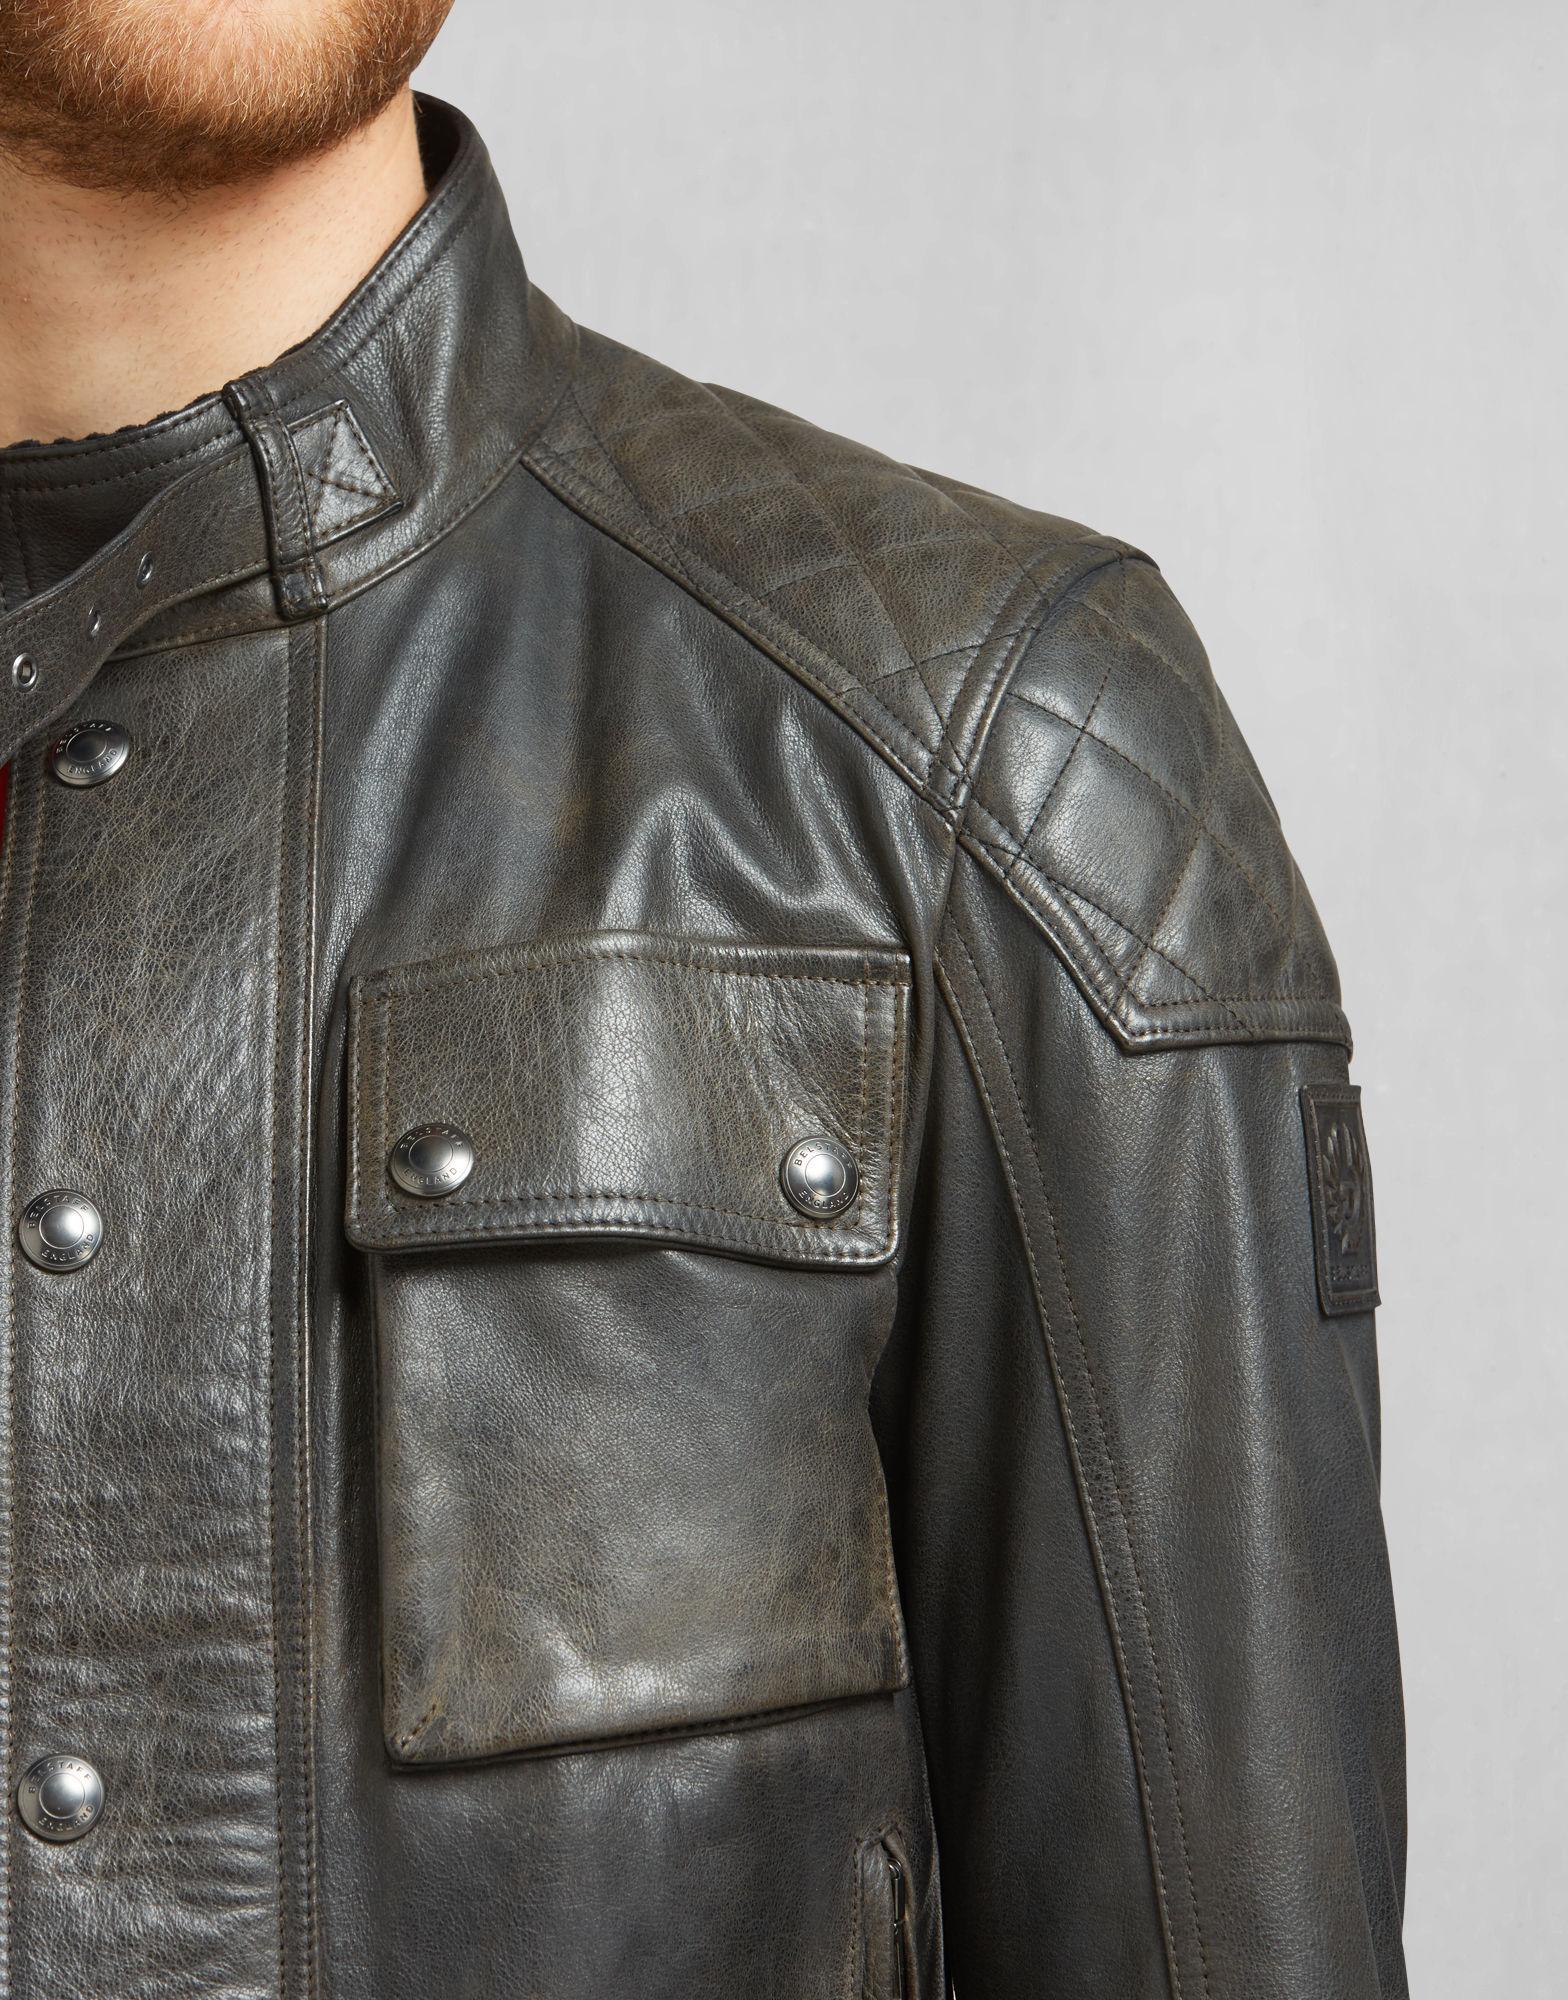 Belstaff Leather James Hunt Tokyo Blouson in Black for Men - Lyst